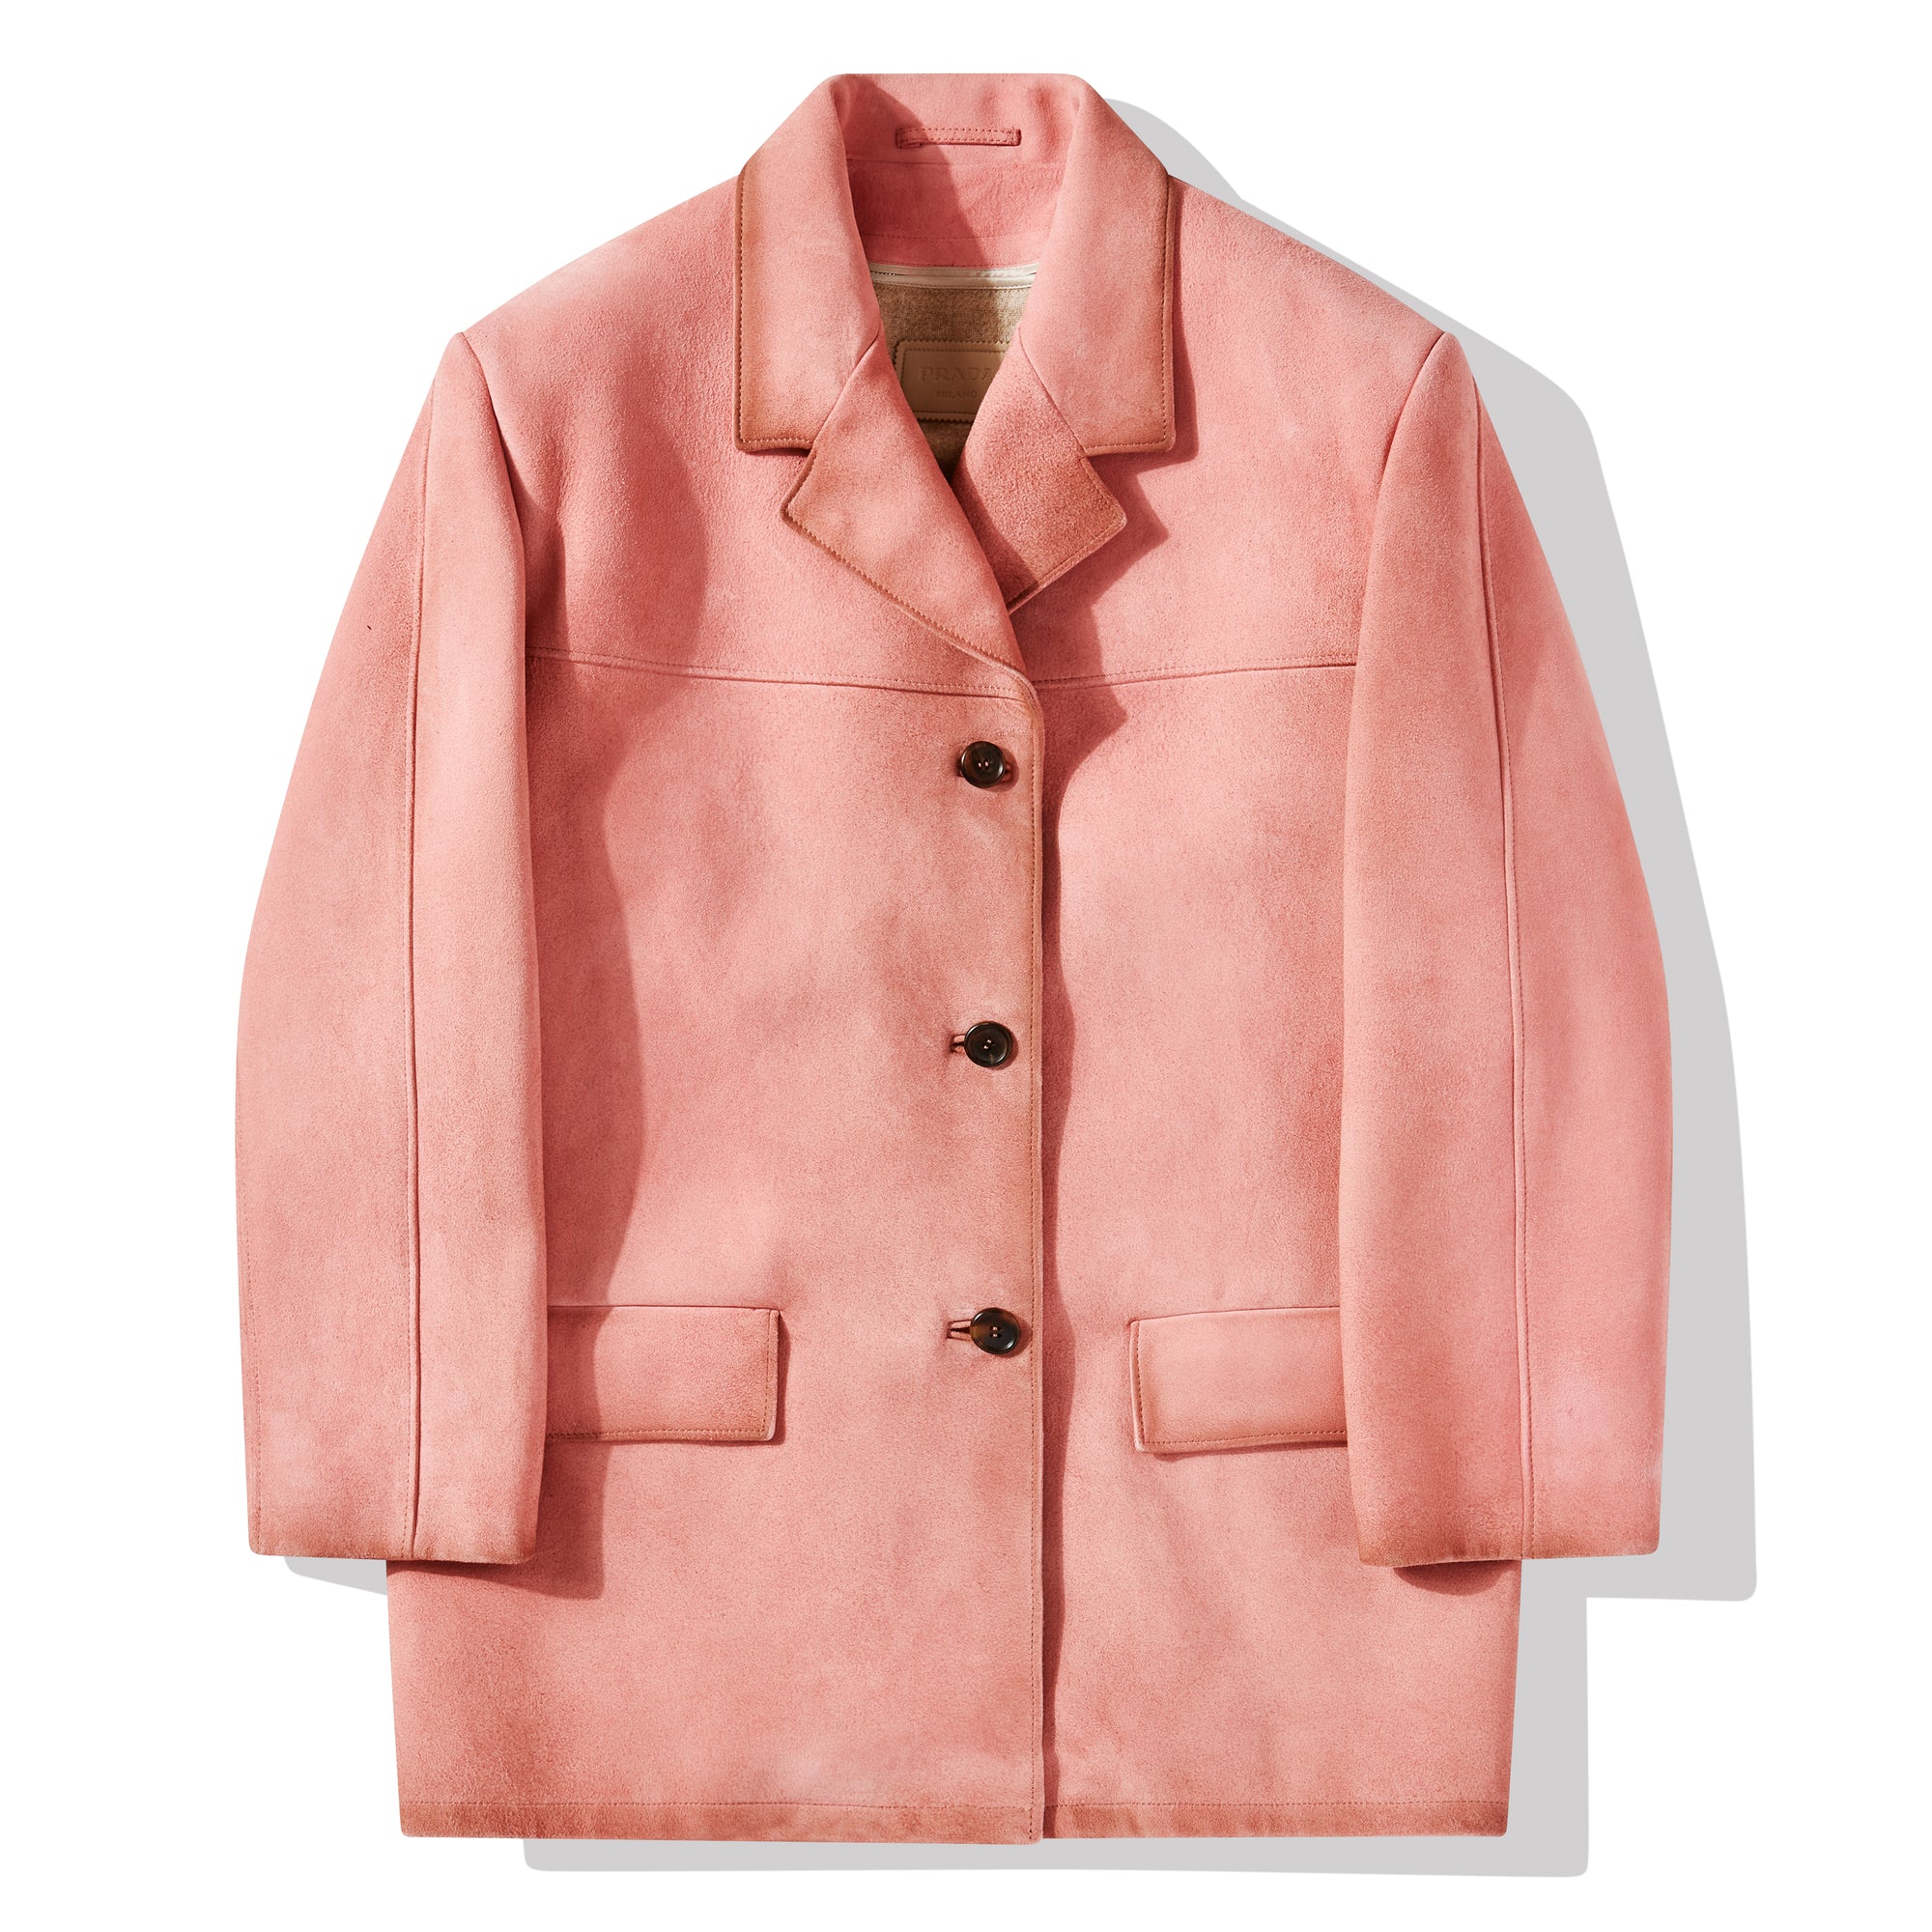 Prada - Women’s Suede Coat - (Petal Pink) view 5